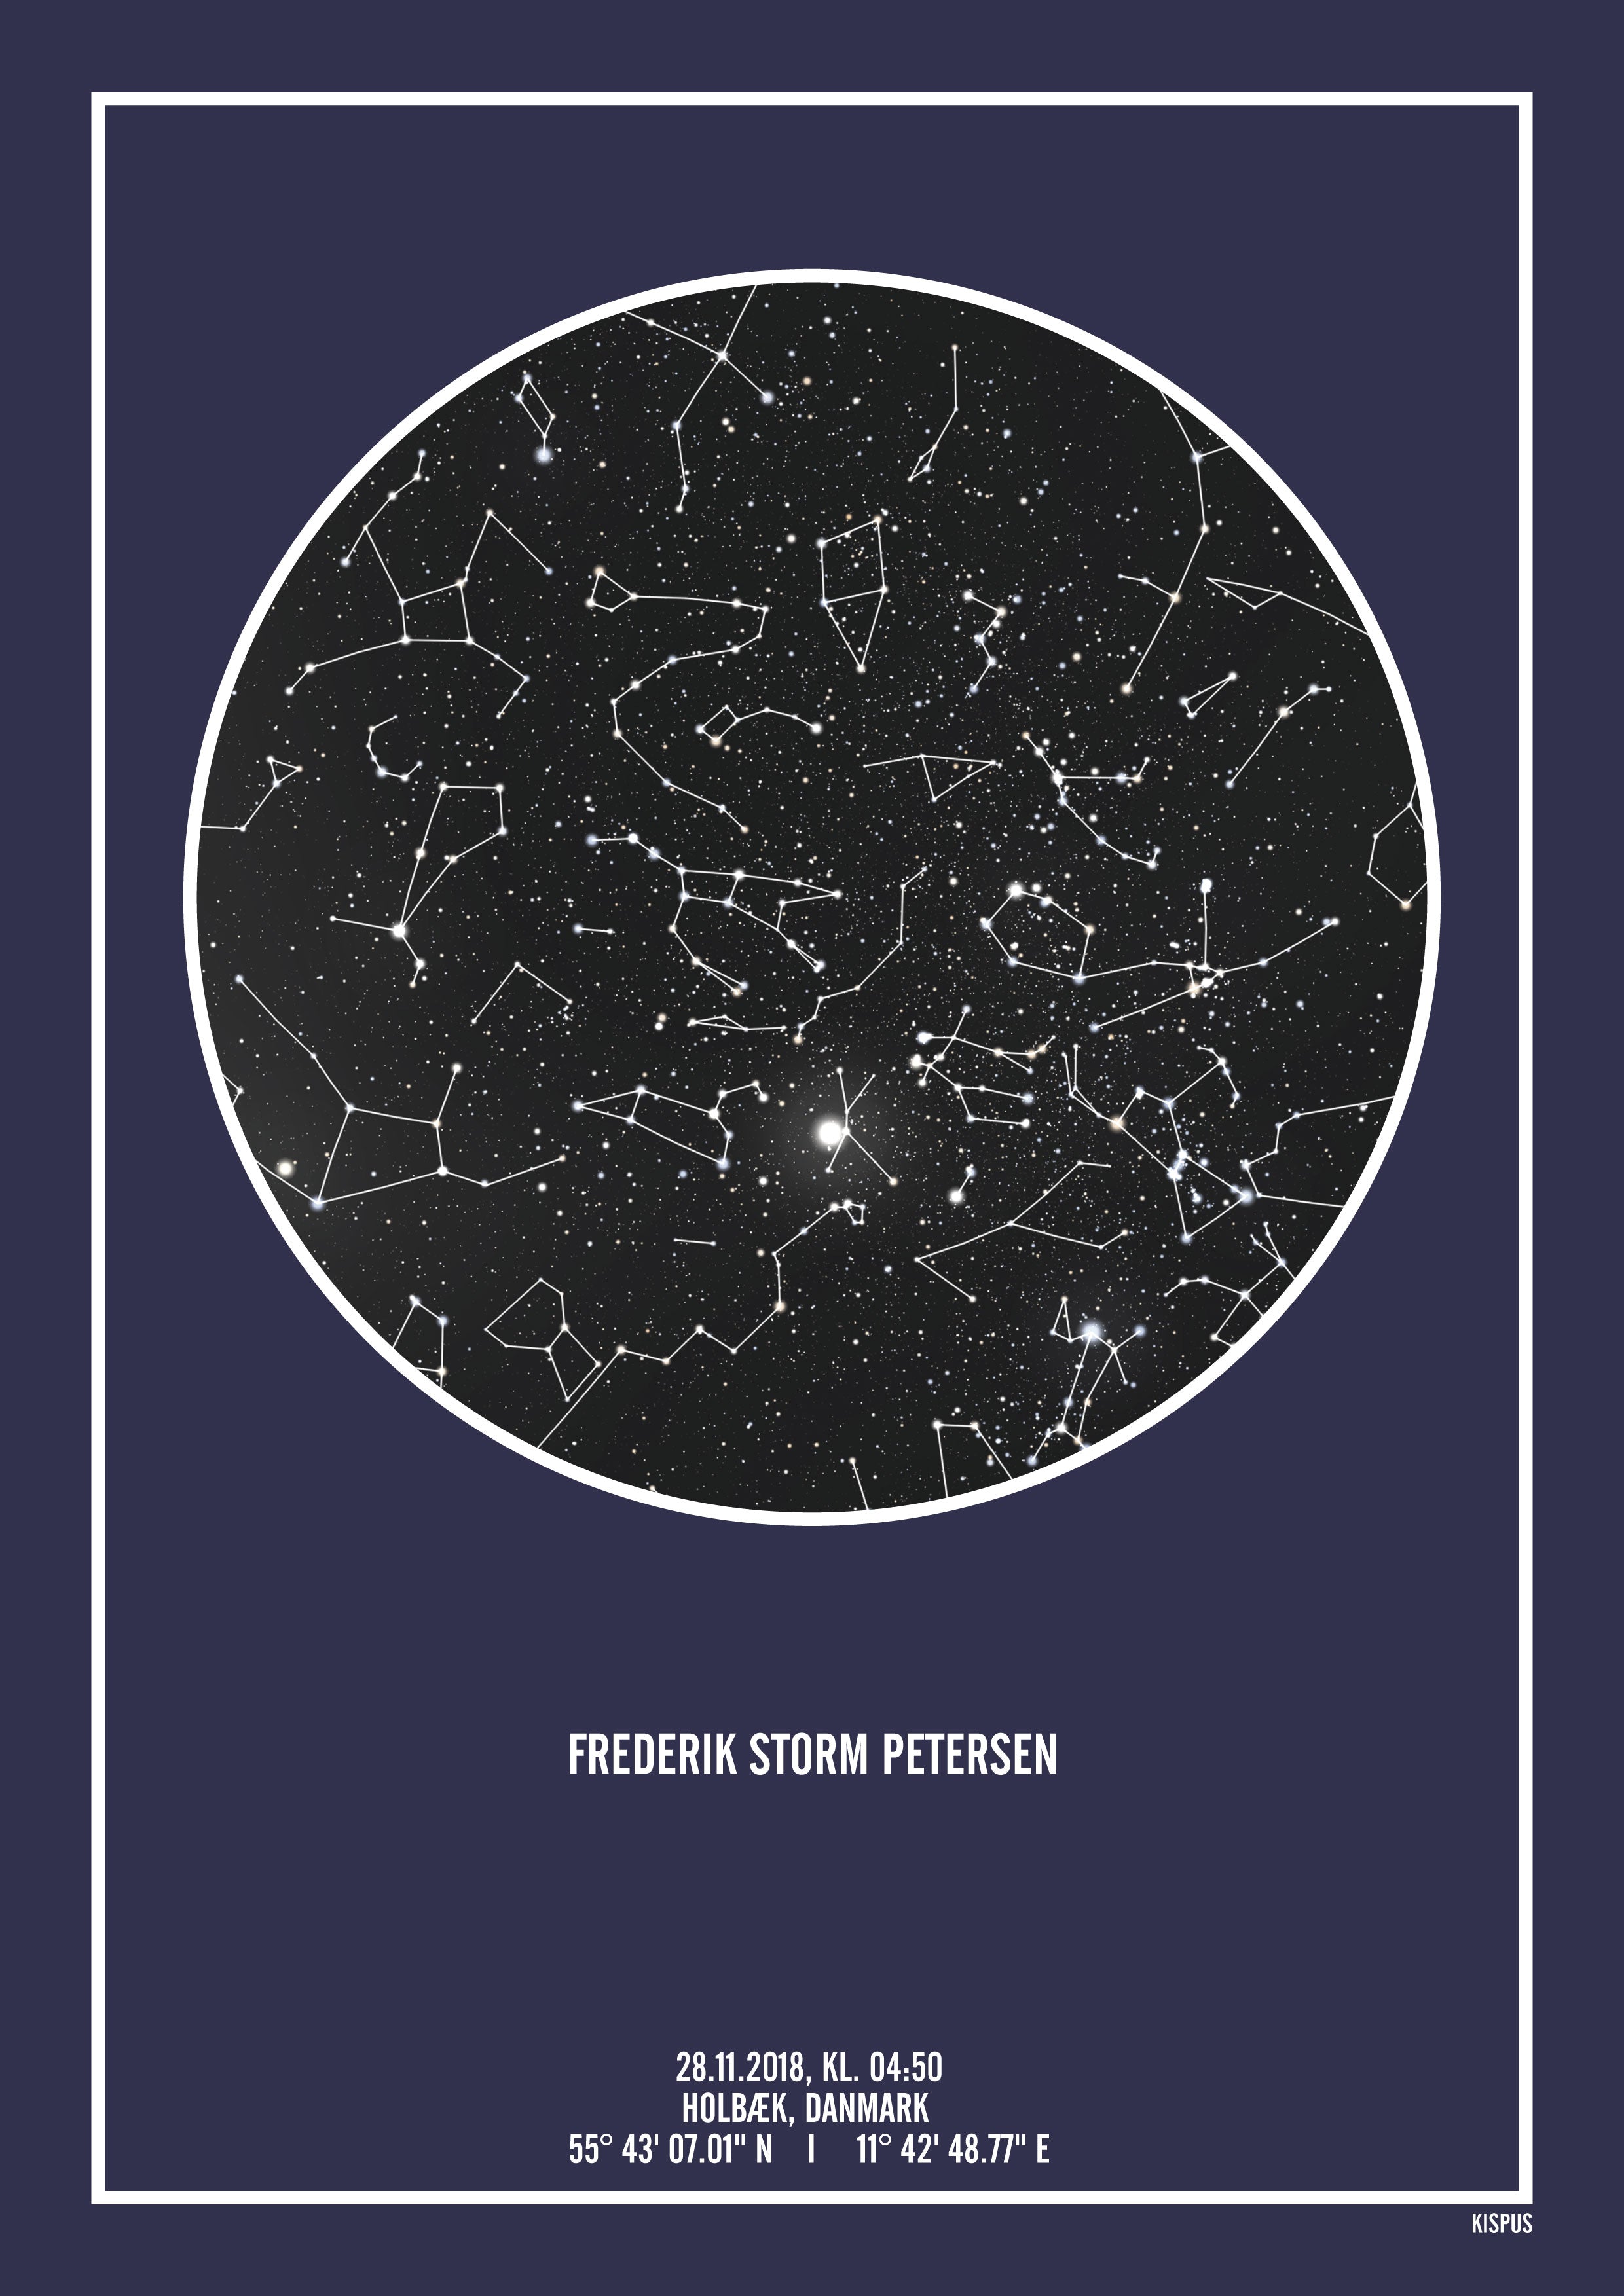 Se PERSONLIG STJERNEHIMMEL PLAKAT (MØRKEBLÅ) - 50x70 / Sort stjernehimmel / Stjernehimmel med stjernebilleder hos KISPUS